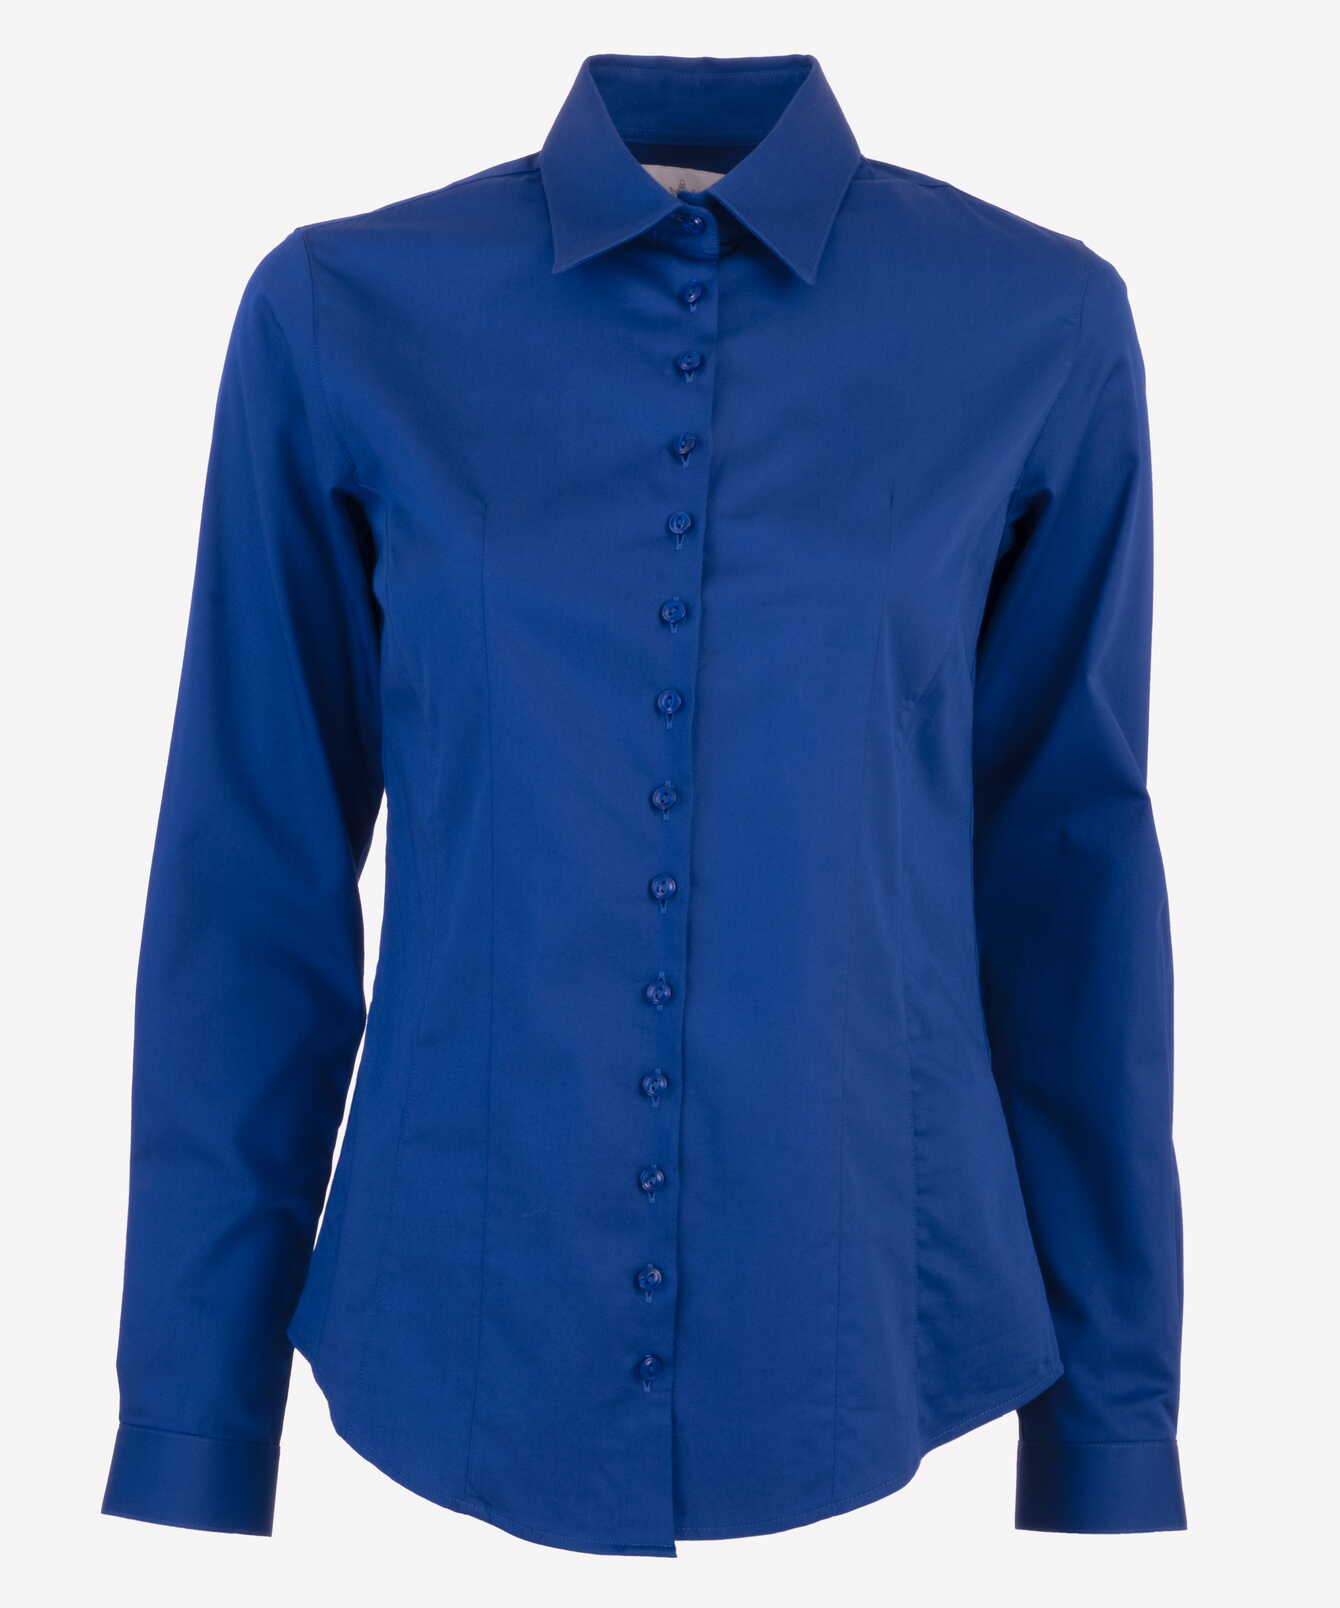 Shirt Moa Cotton Stretch Cobalt Blue Shirt The Shirt Factory